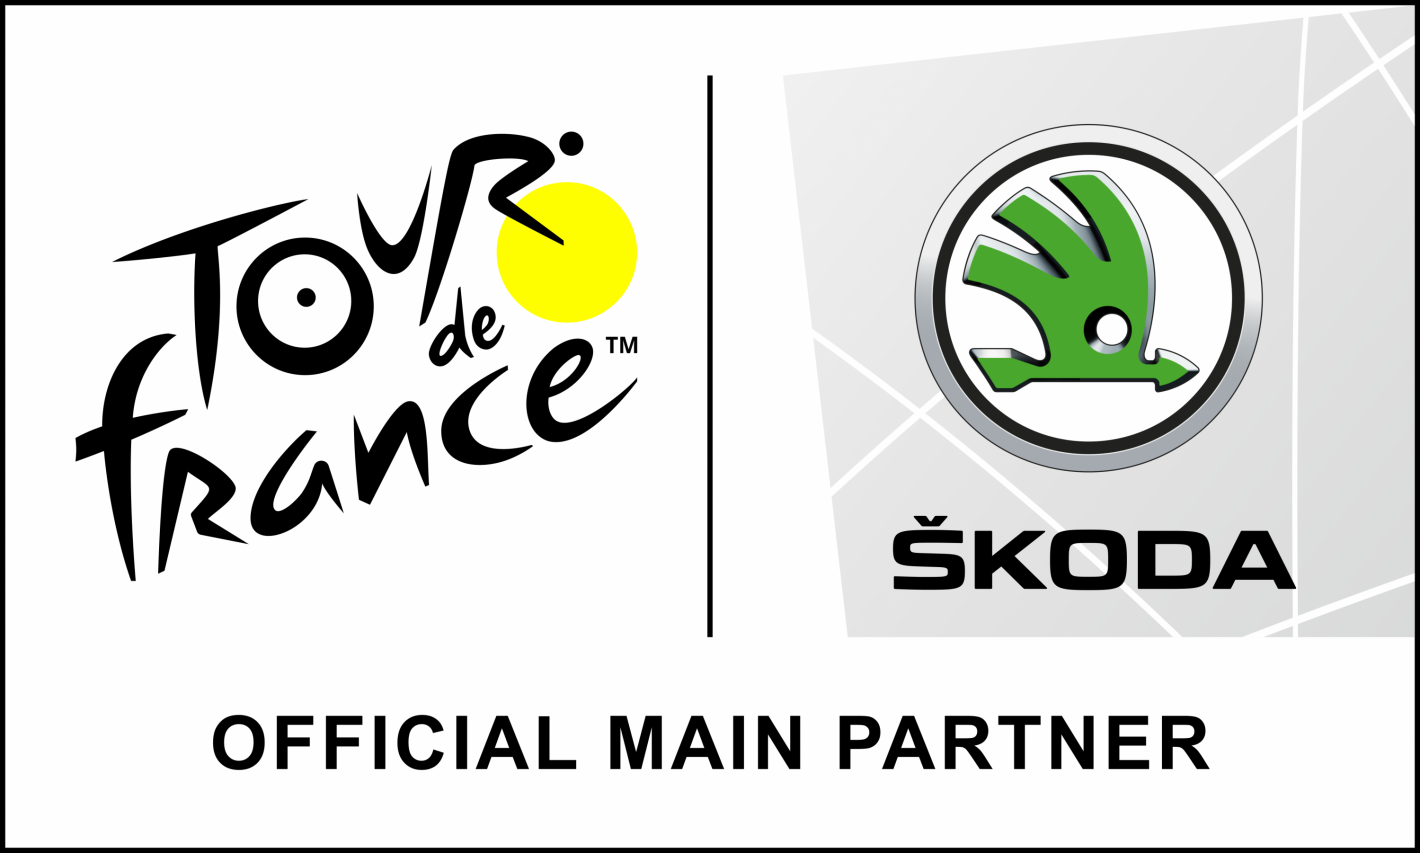 Skoda als officiële partner van tour de france